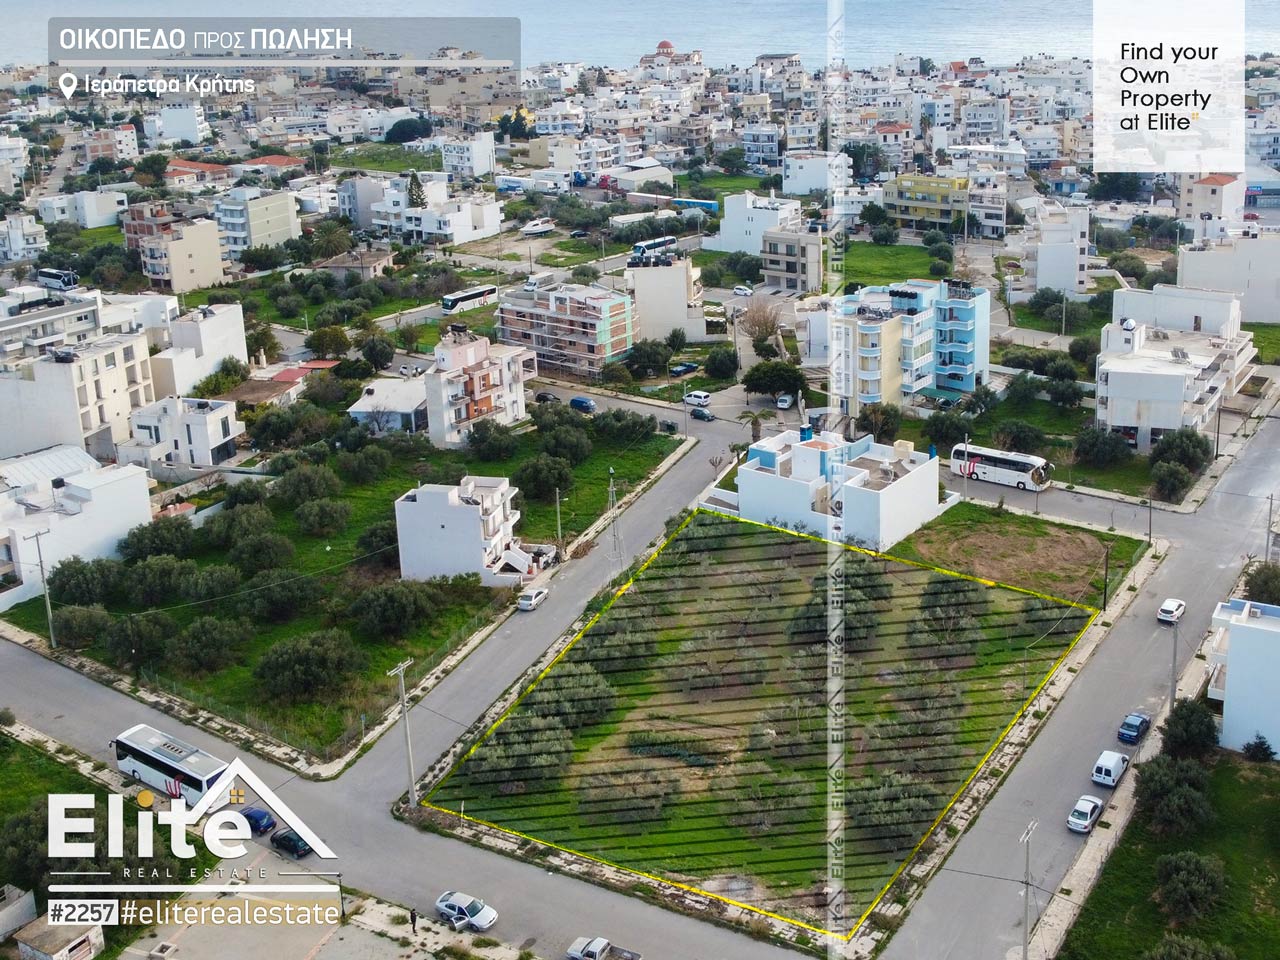 Grundstück zu verkaufen in Ierapetra, Kreta #2257 | ELITE REAL ESTATE